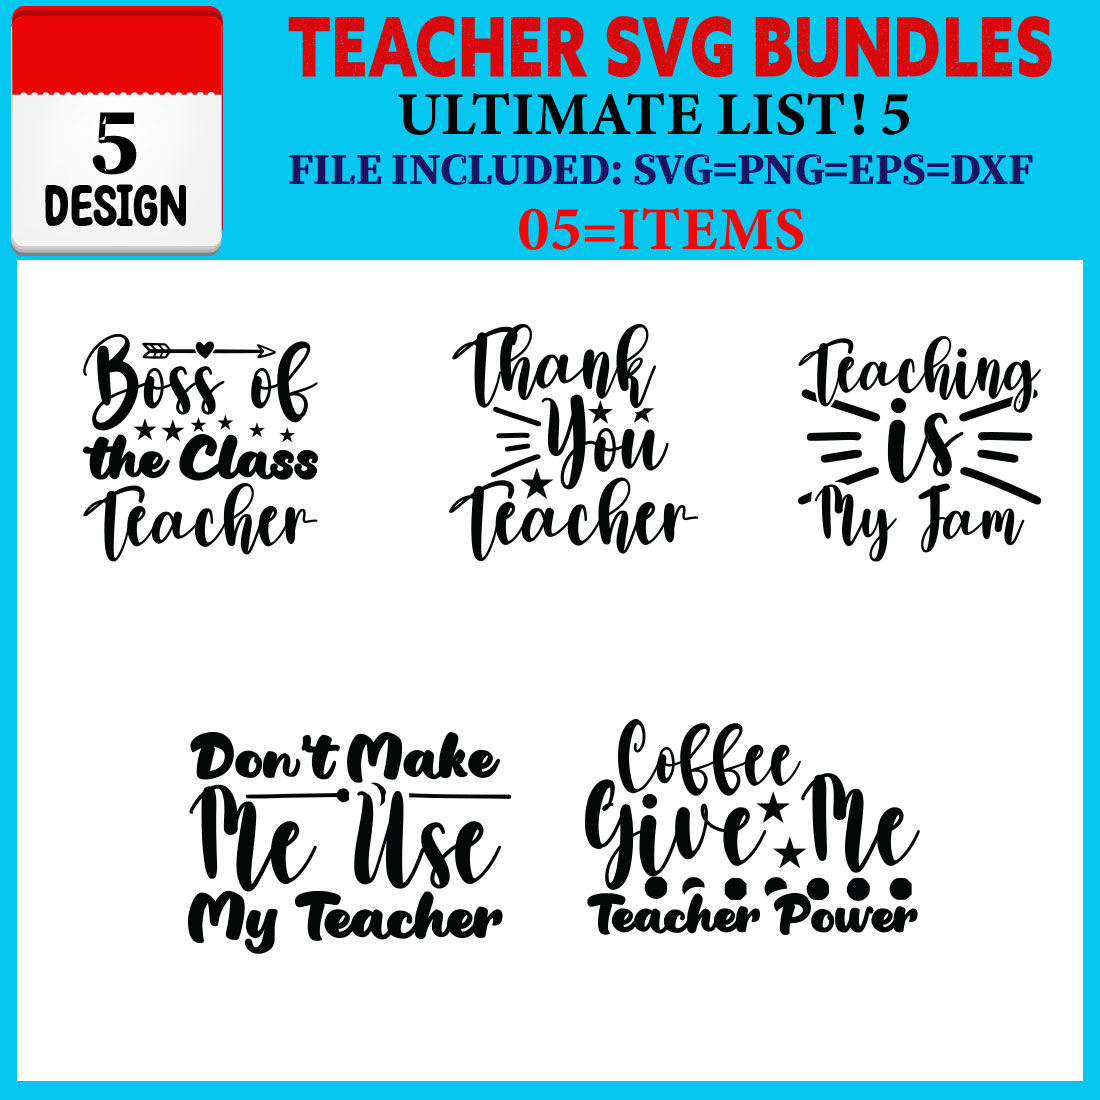 Teacher T-shirt Design Bundle Vol-07 cover image.